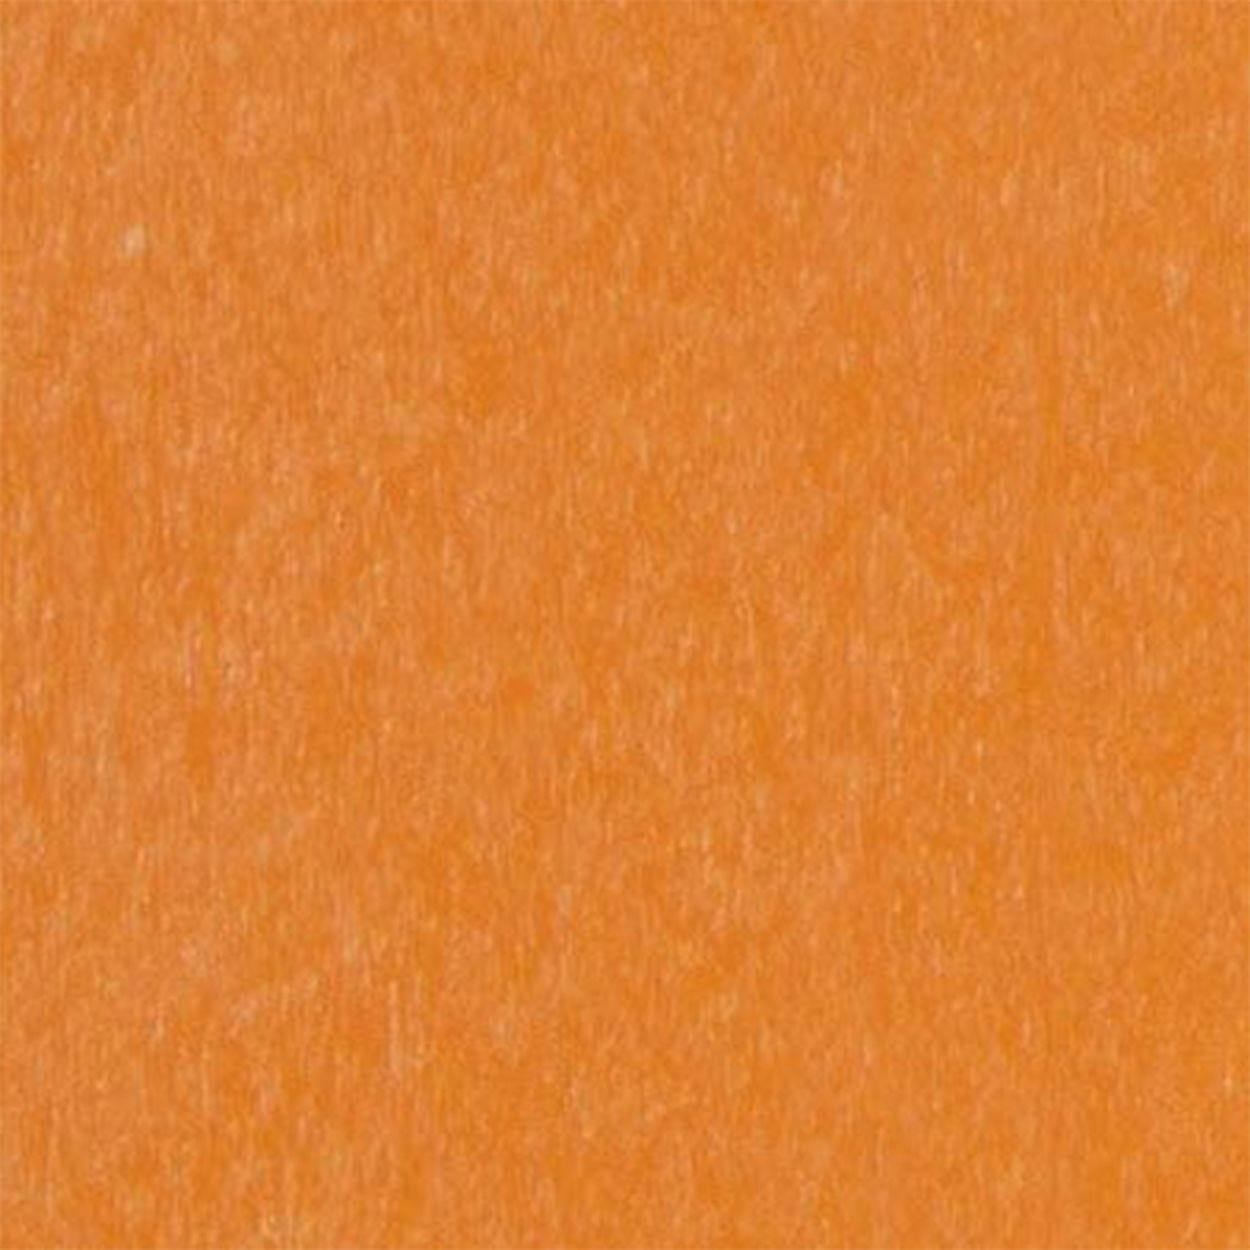 Tangerine Vibrant Lumber